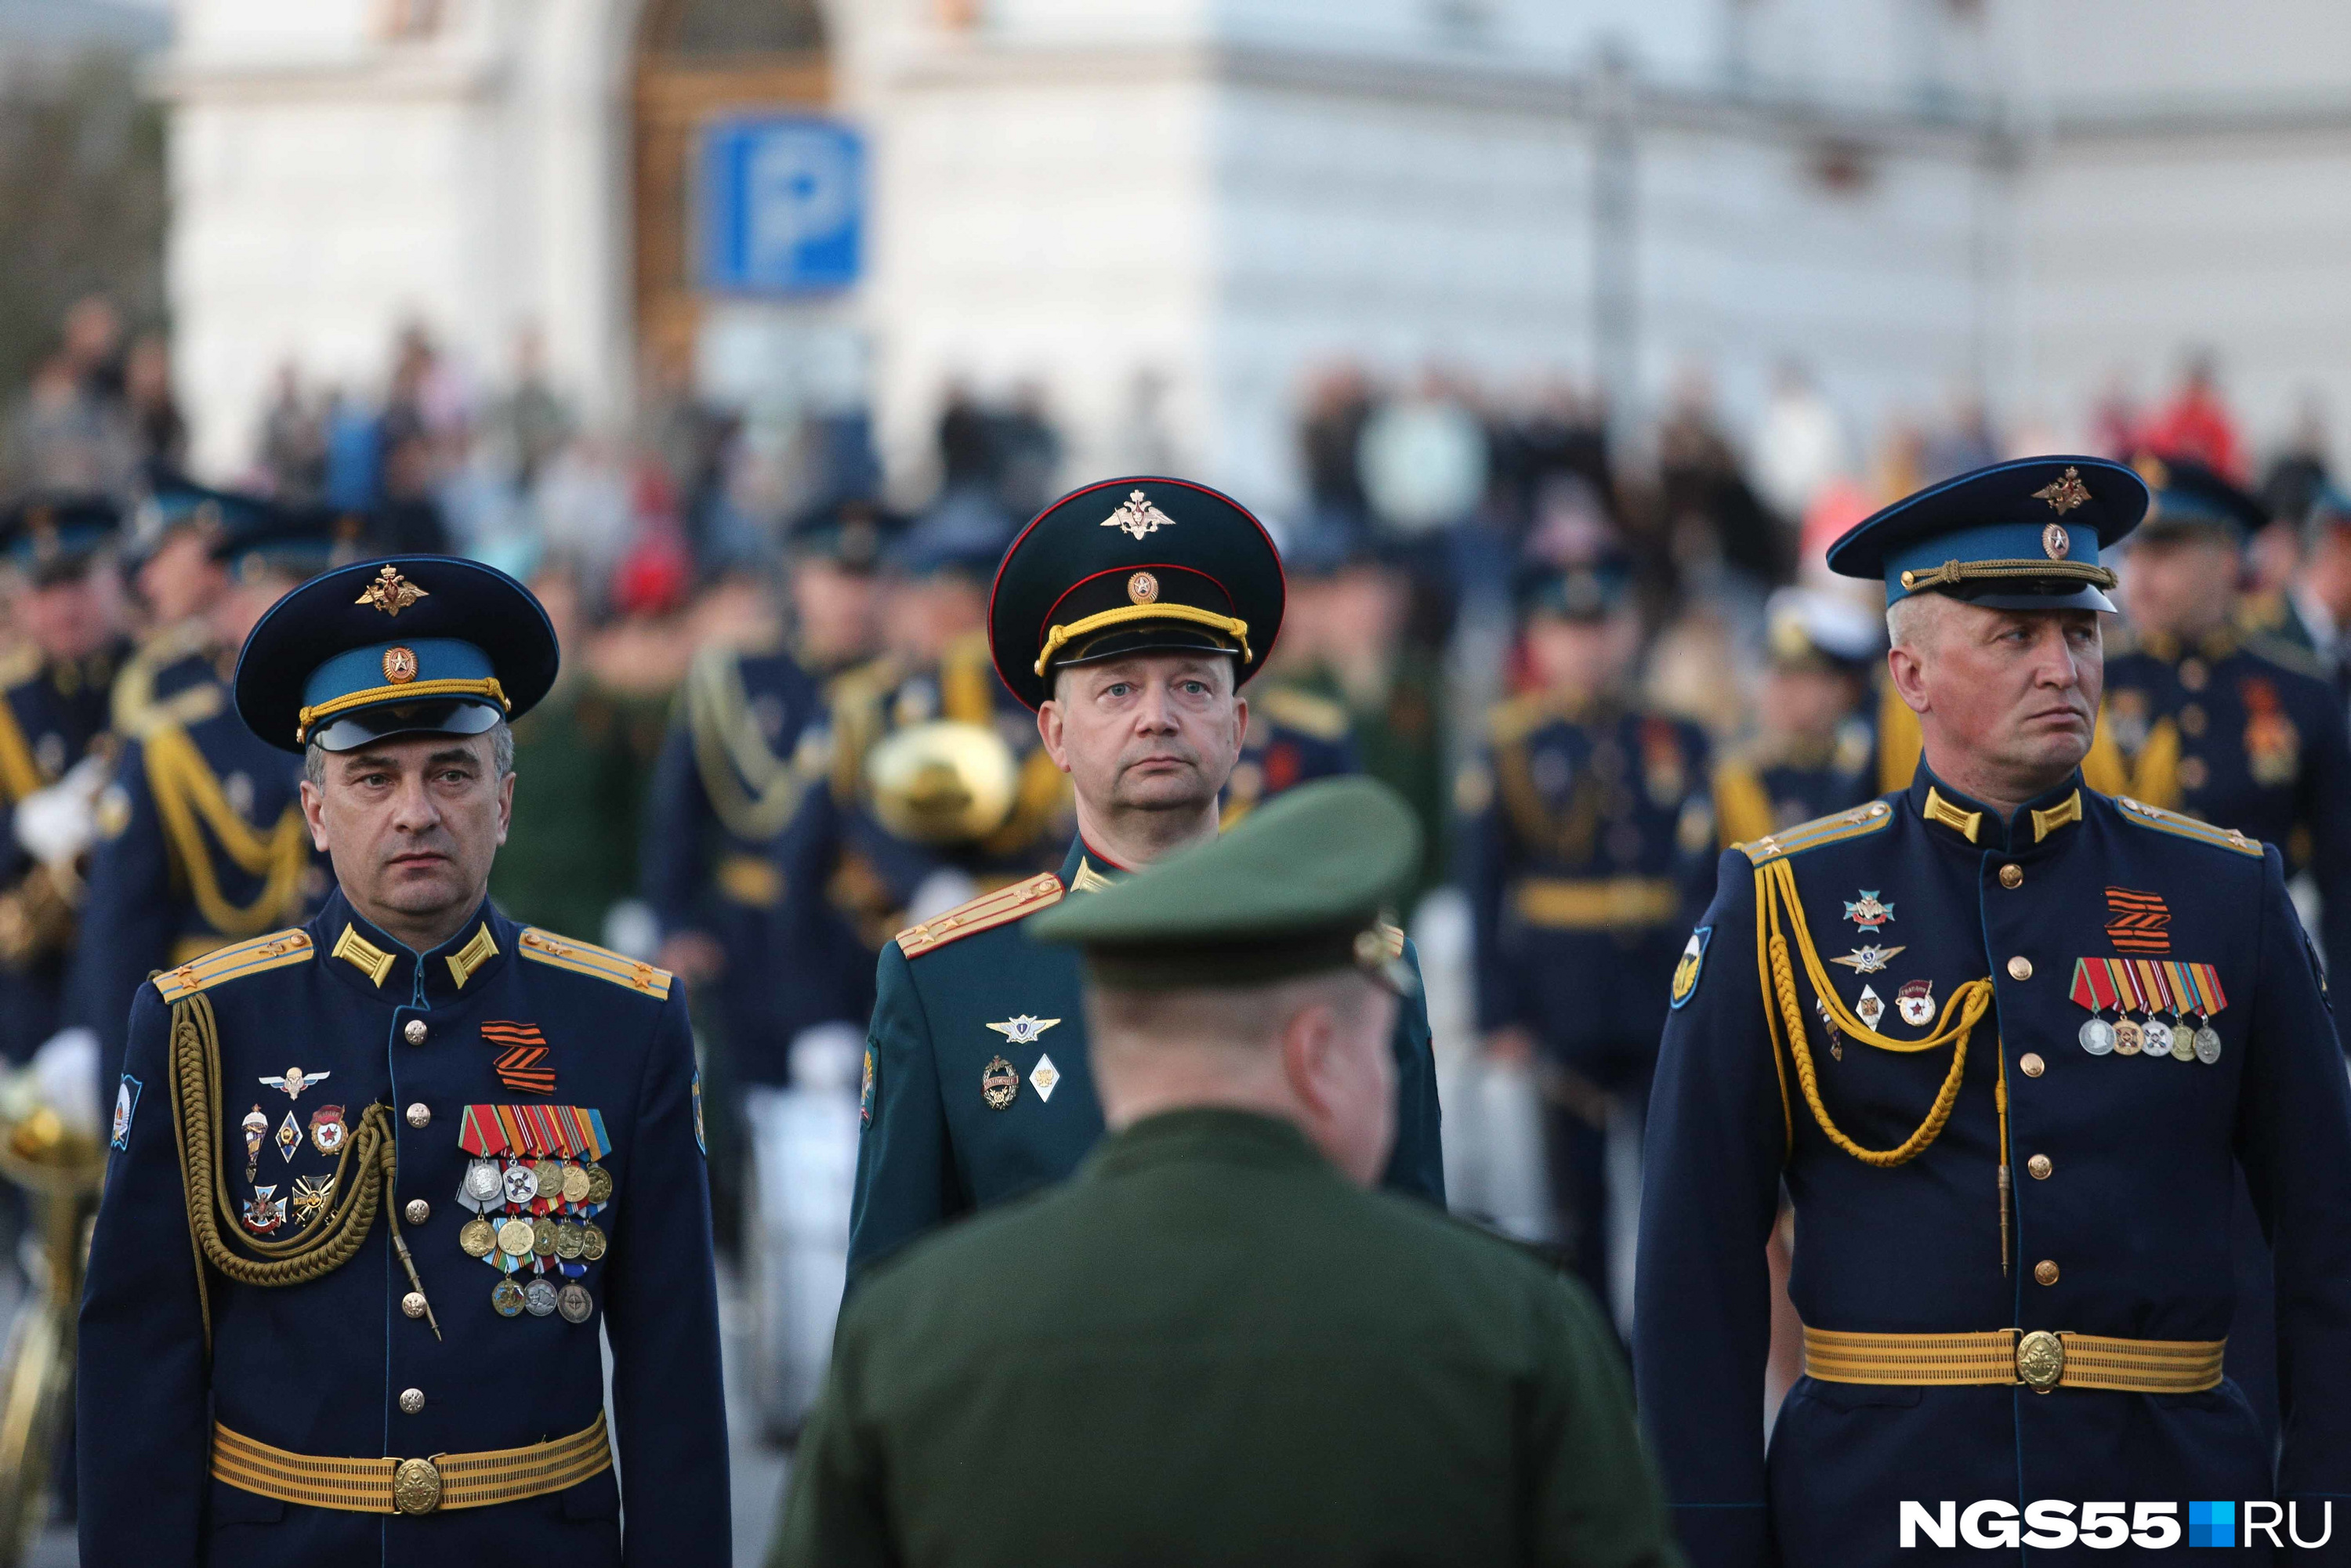 Над орденами и медалями российские офицеры закрепили георгиевские ленты — сложенные в латинскую Z